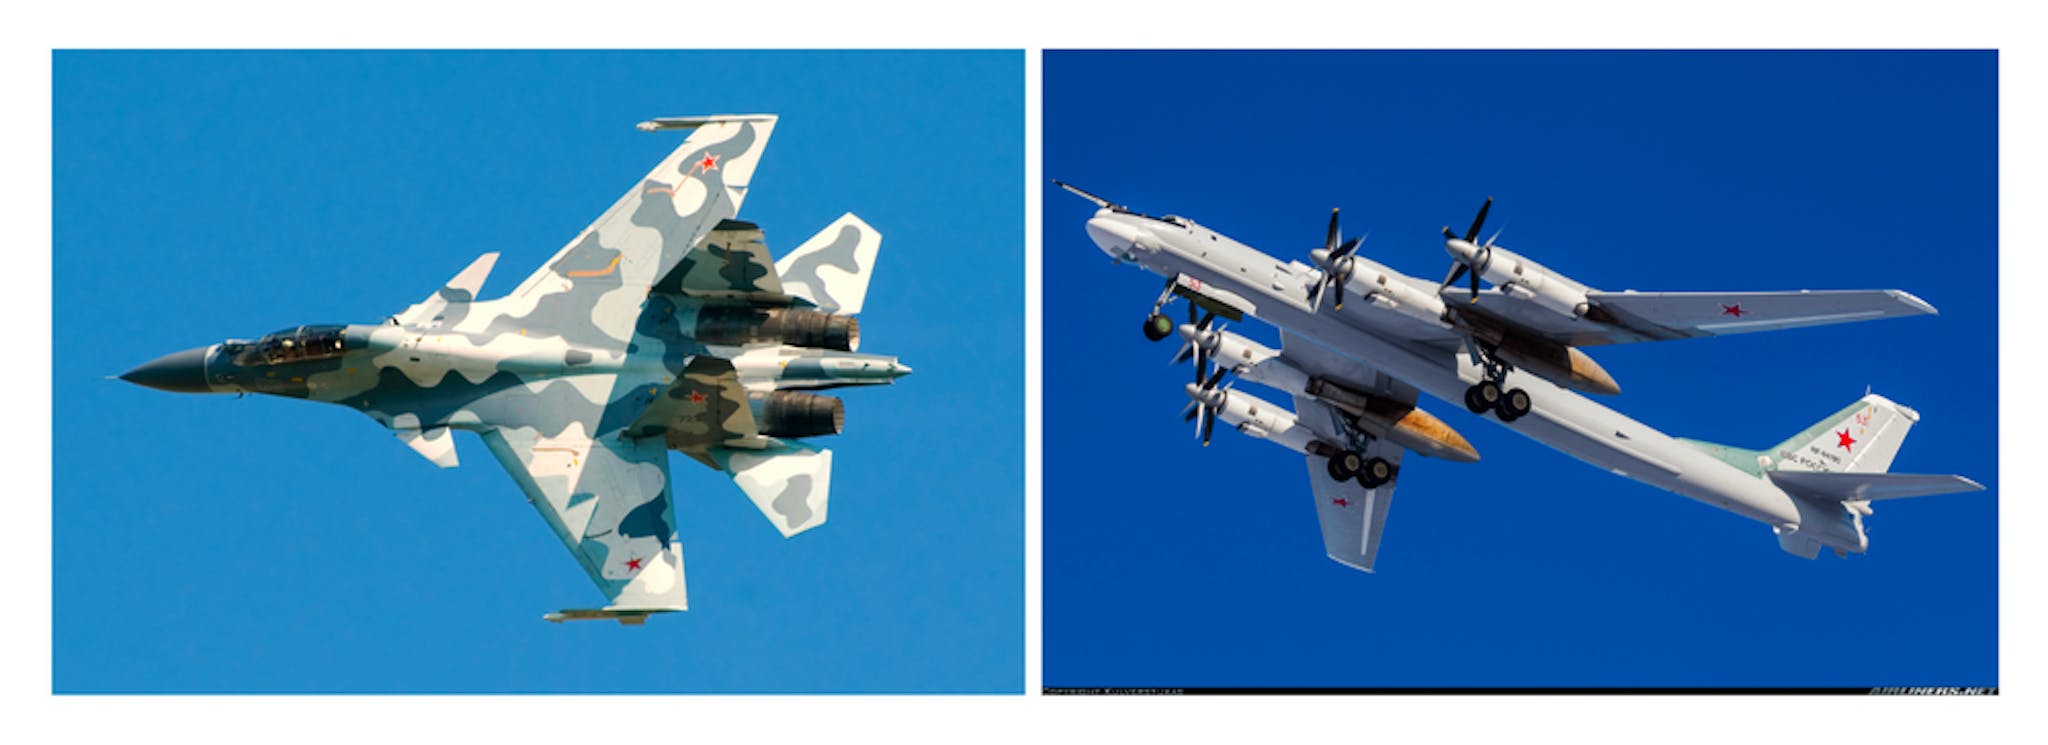 Từ trái sang phải: (1) Su-30, (2) Tu-95